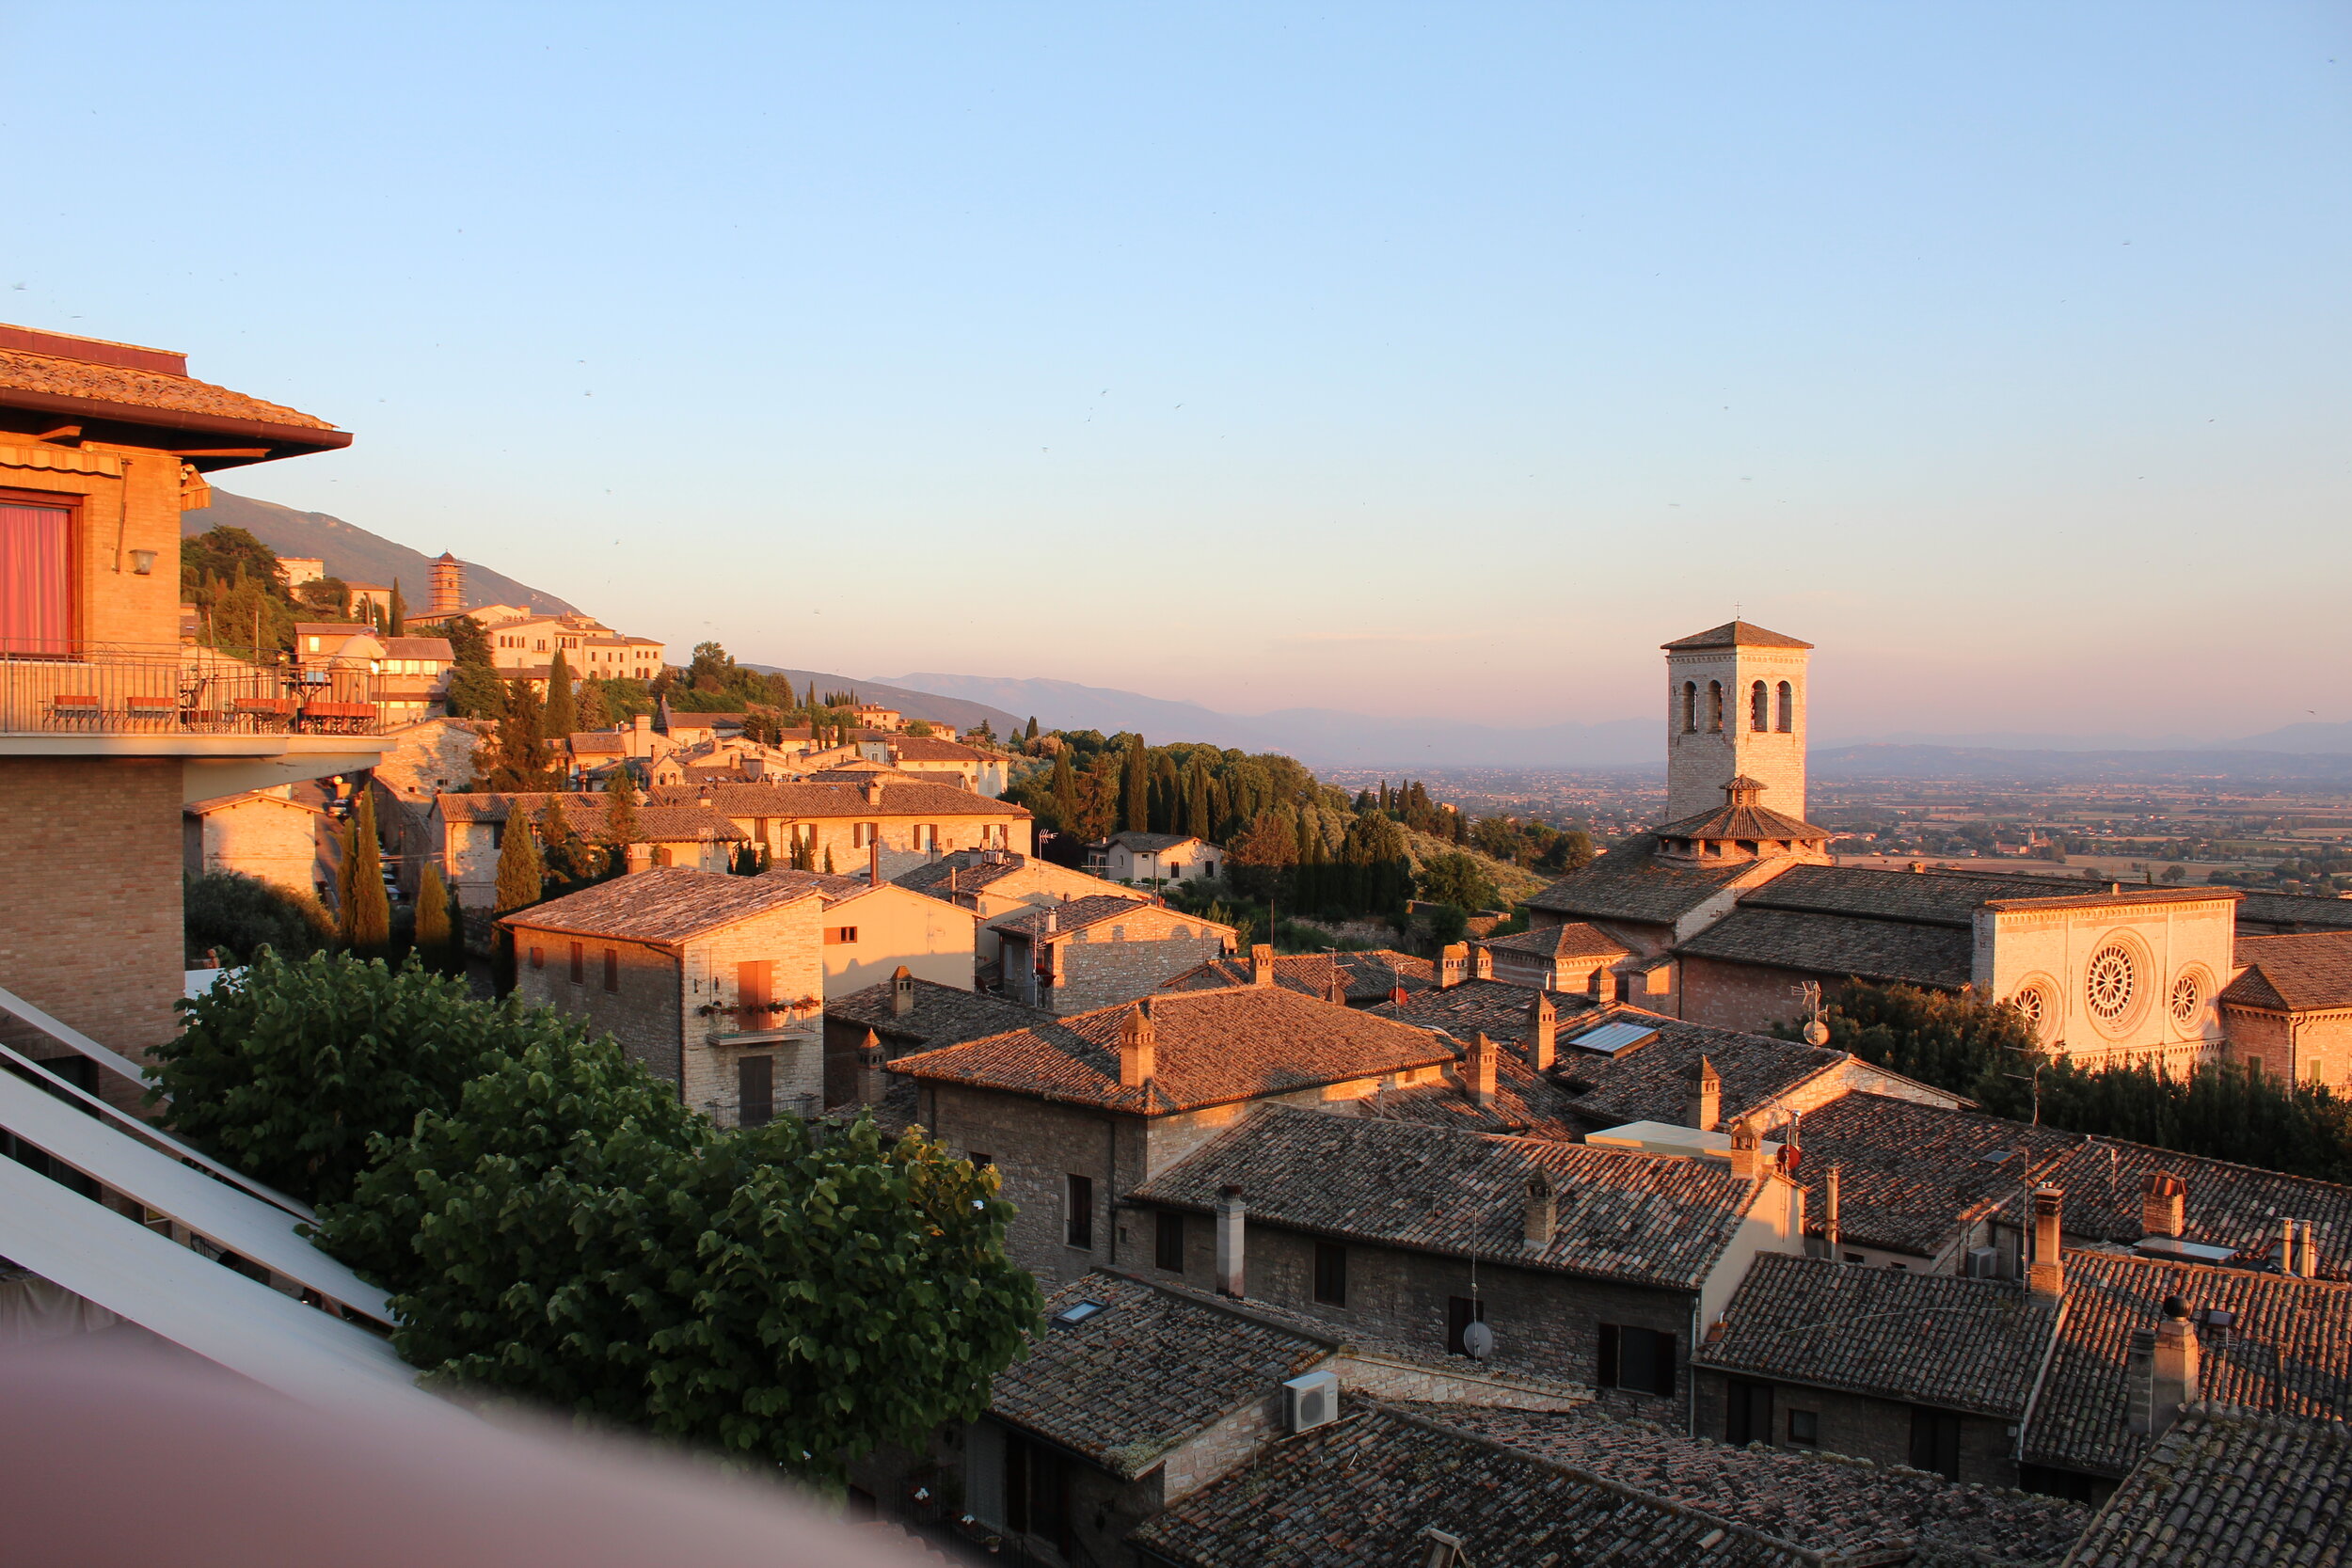 Assisi, Italy at dusk